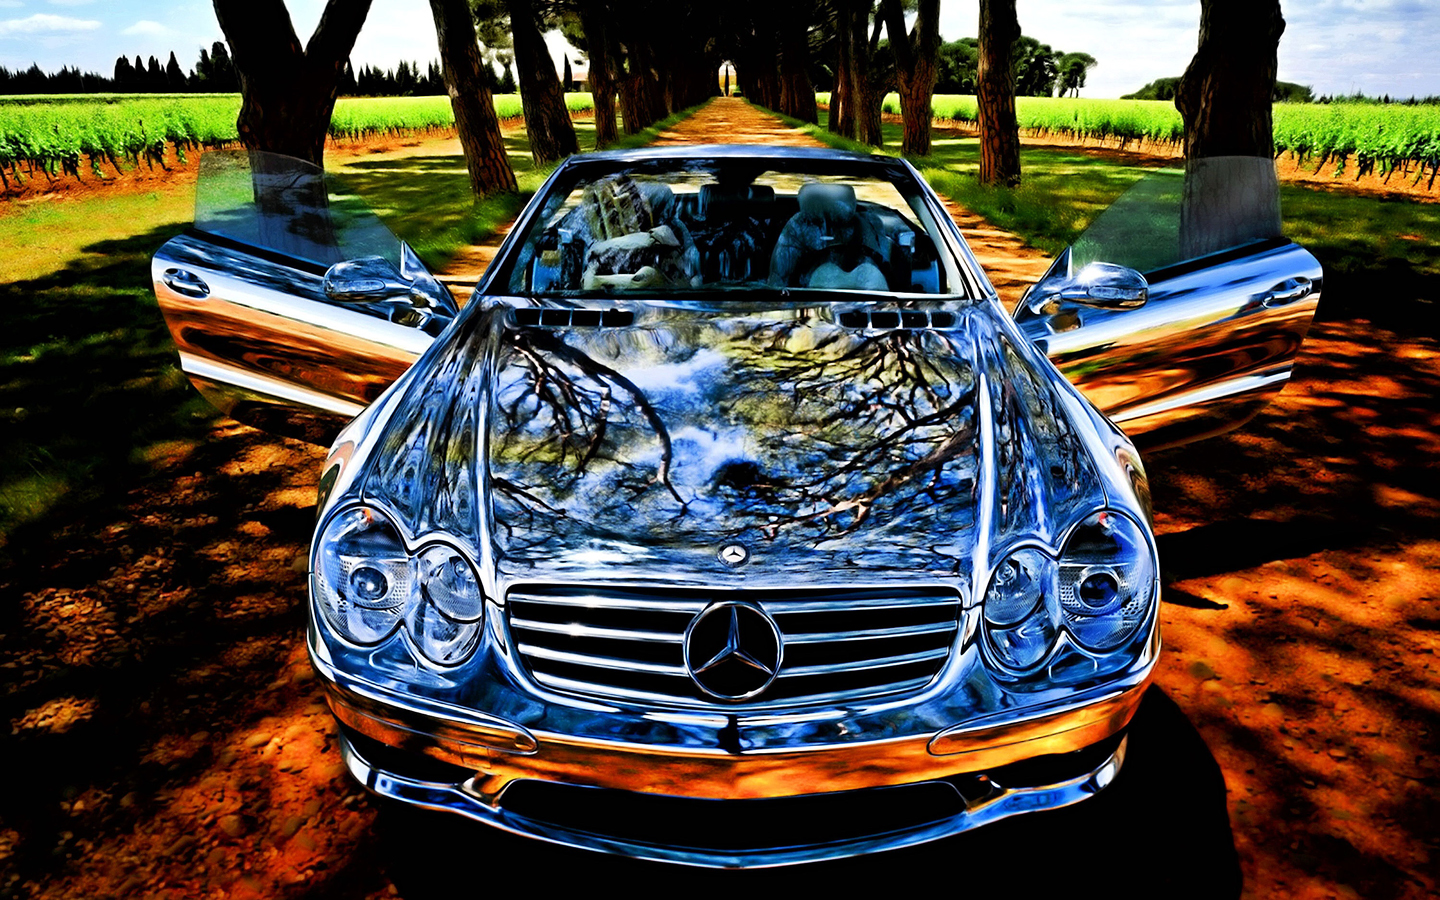 Top 10 Best Mercedes Wallpapers and Desktop Backgrounds - Original ...